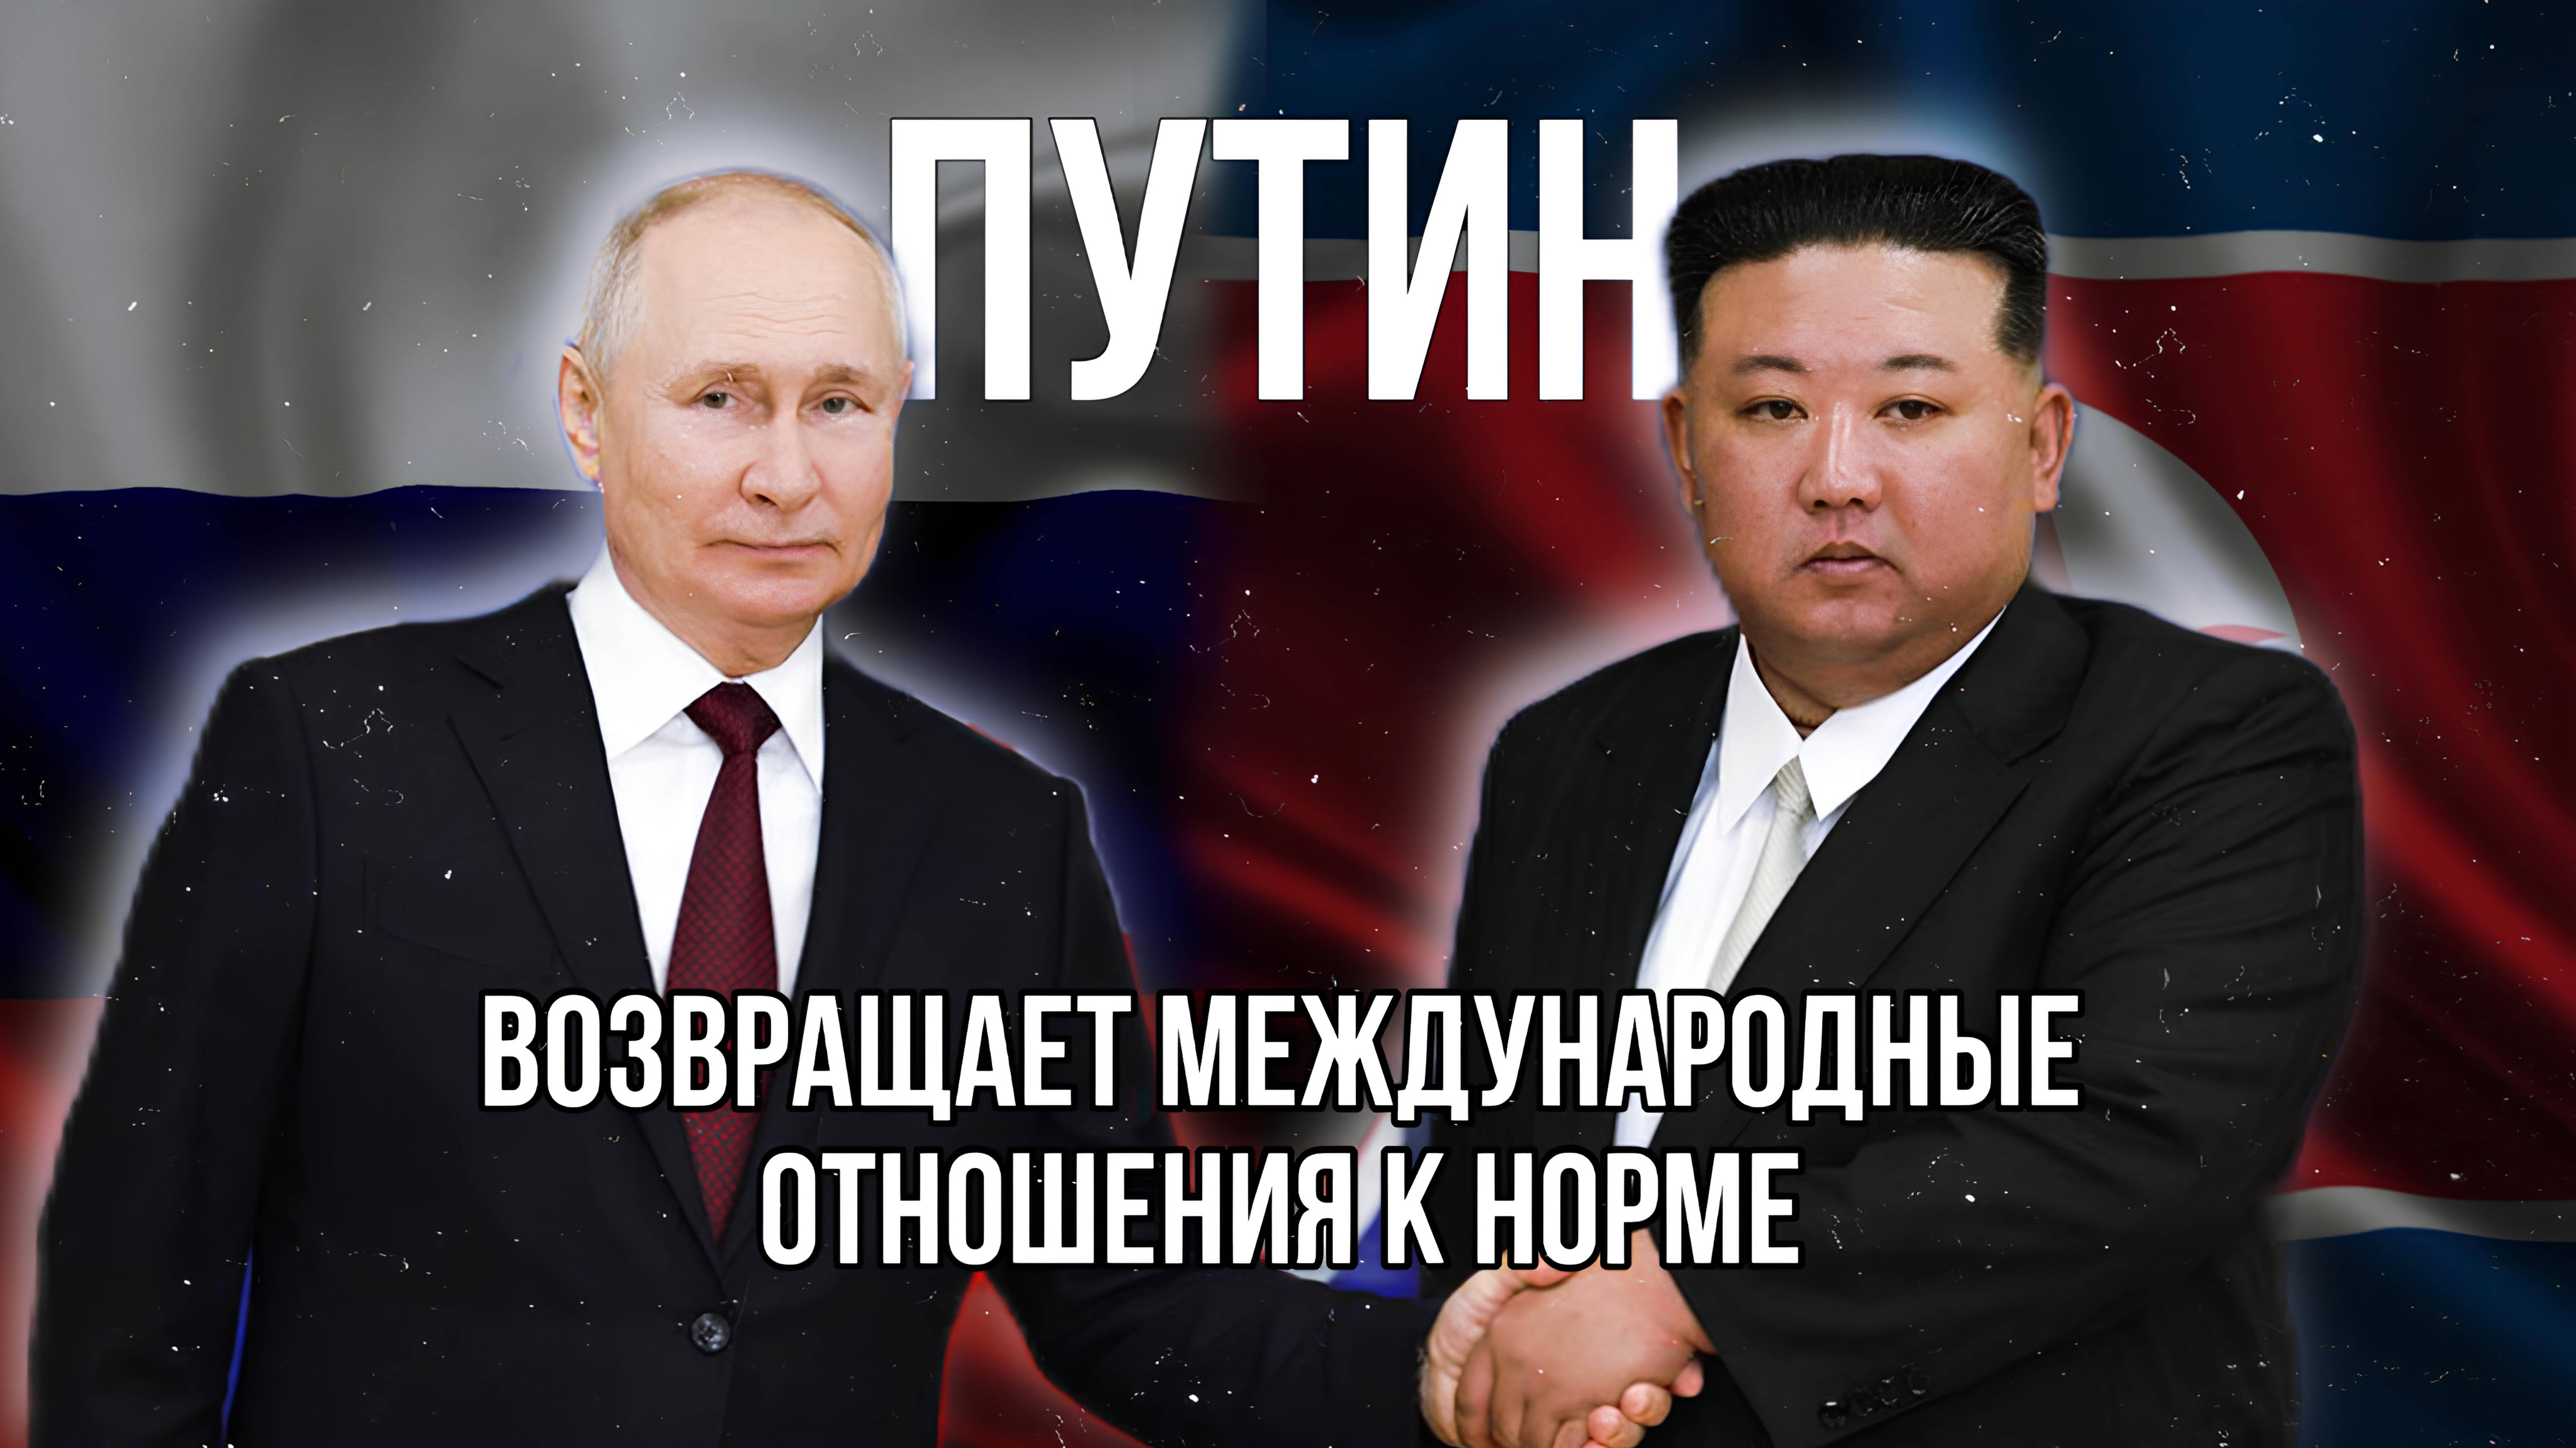 Вояж Владимира Путина в КНДР и Вьетнам возвращает международные отношения к норме